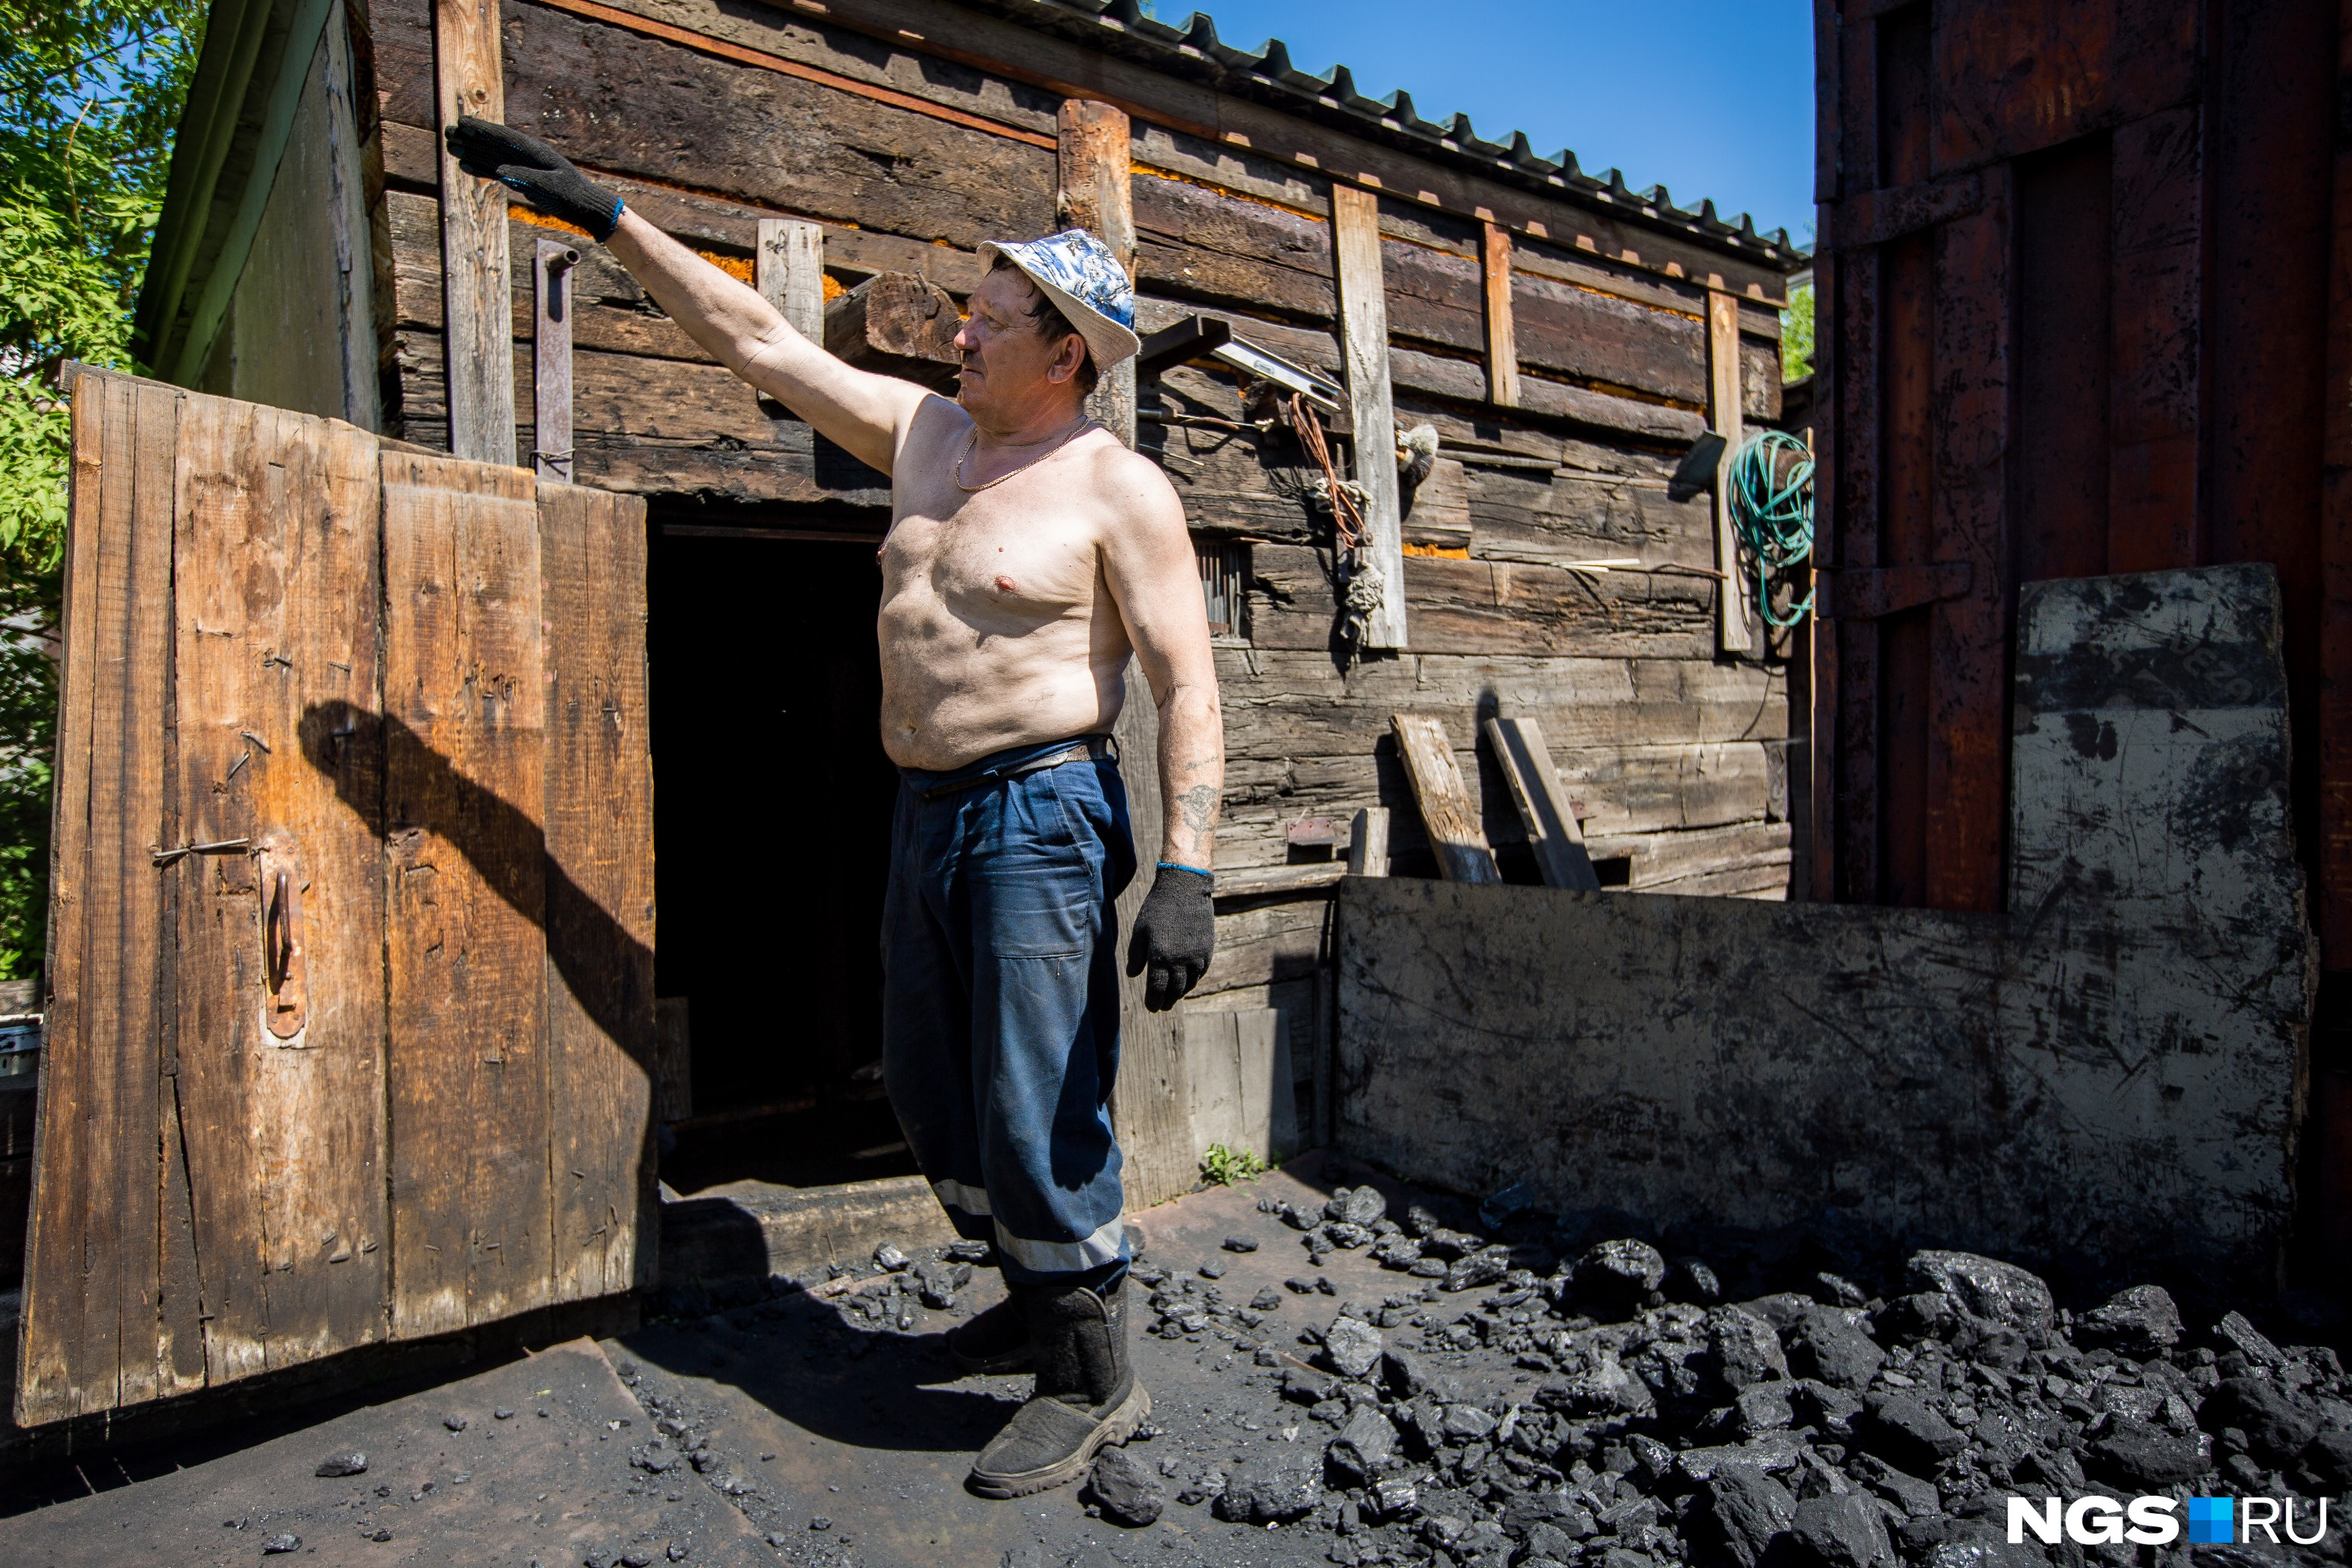 Жители Большой переживают, что не смогут приобрести жильё в современном Новосибирске на деньги от компенсации